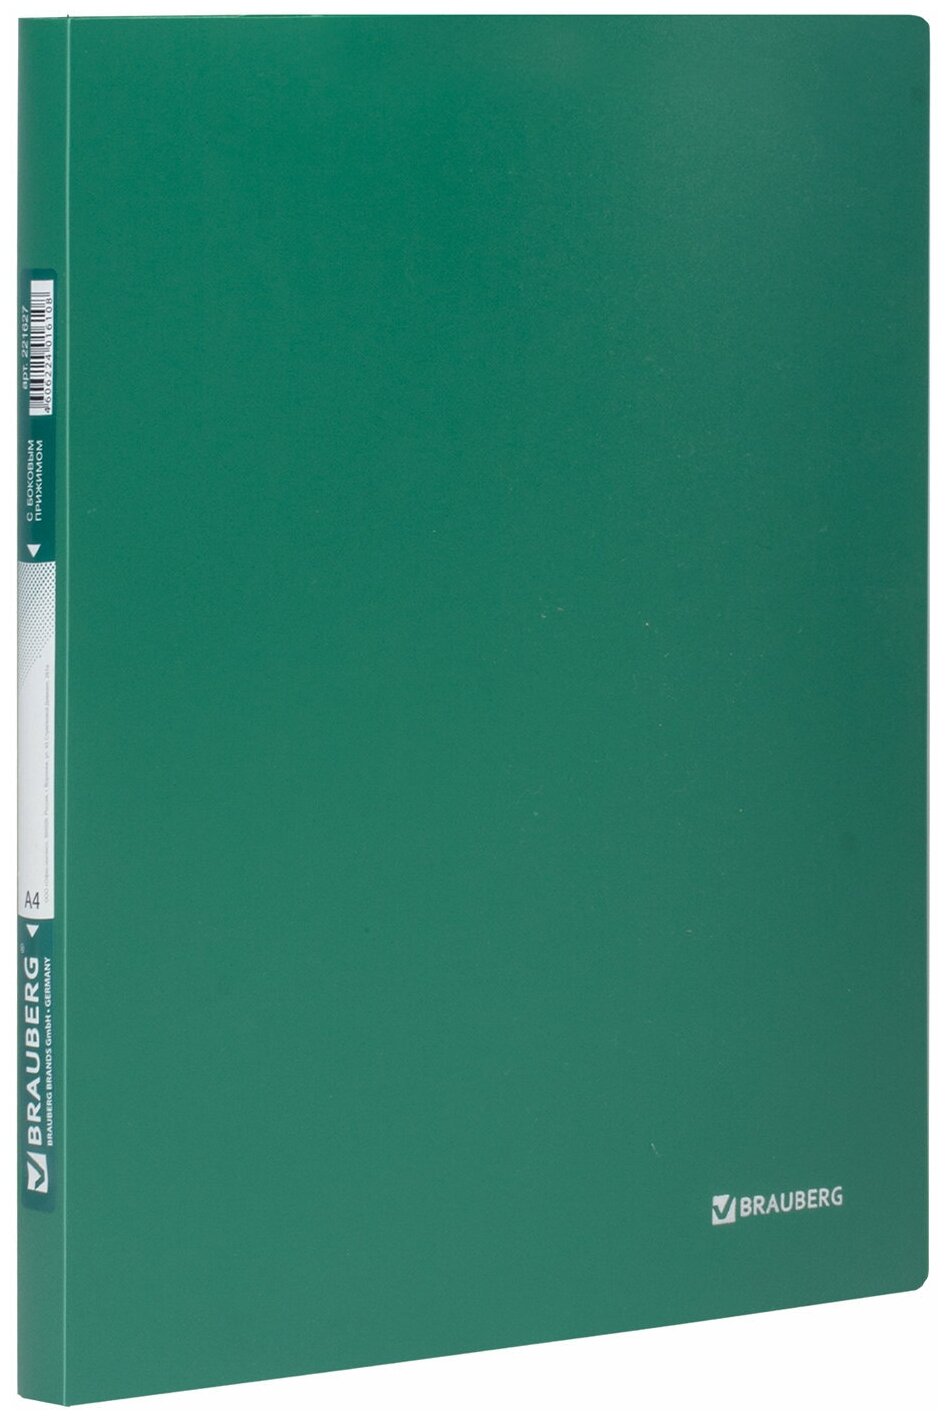 Папка с боковым металлическим прижимом Brauberg стандарт, зеленая, до 100 листов, 0,6 мм (221627)